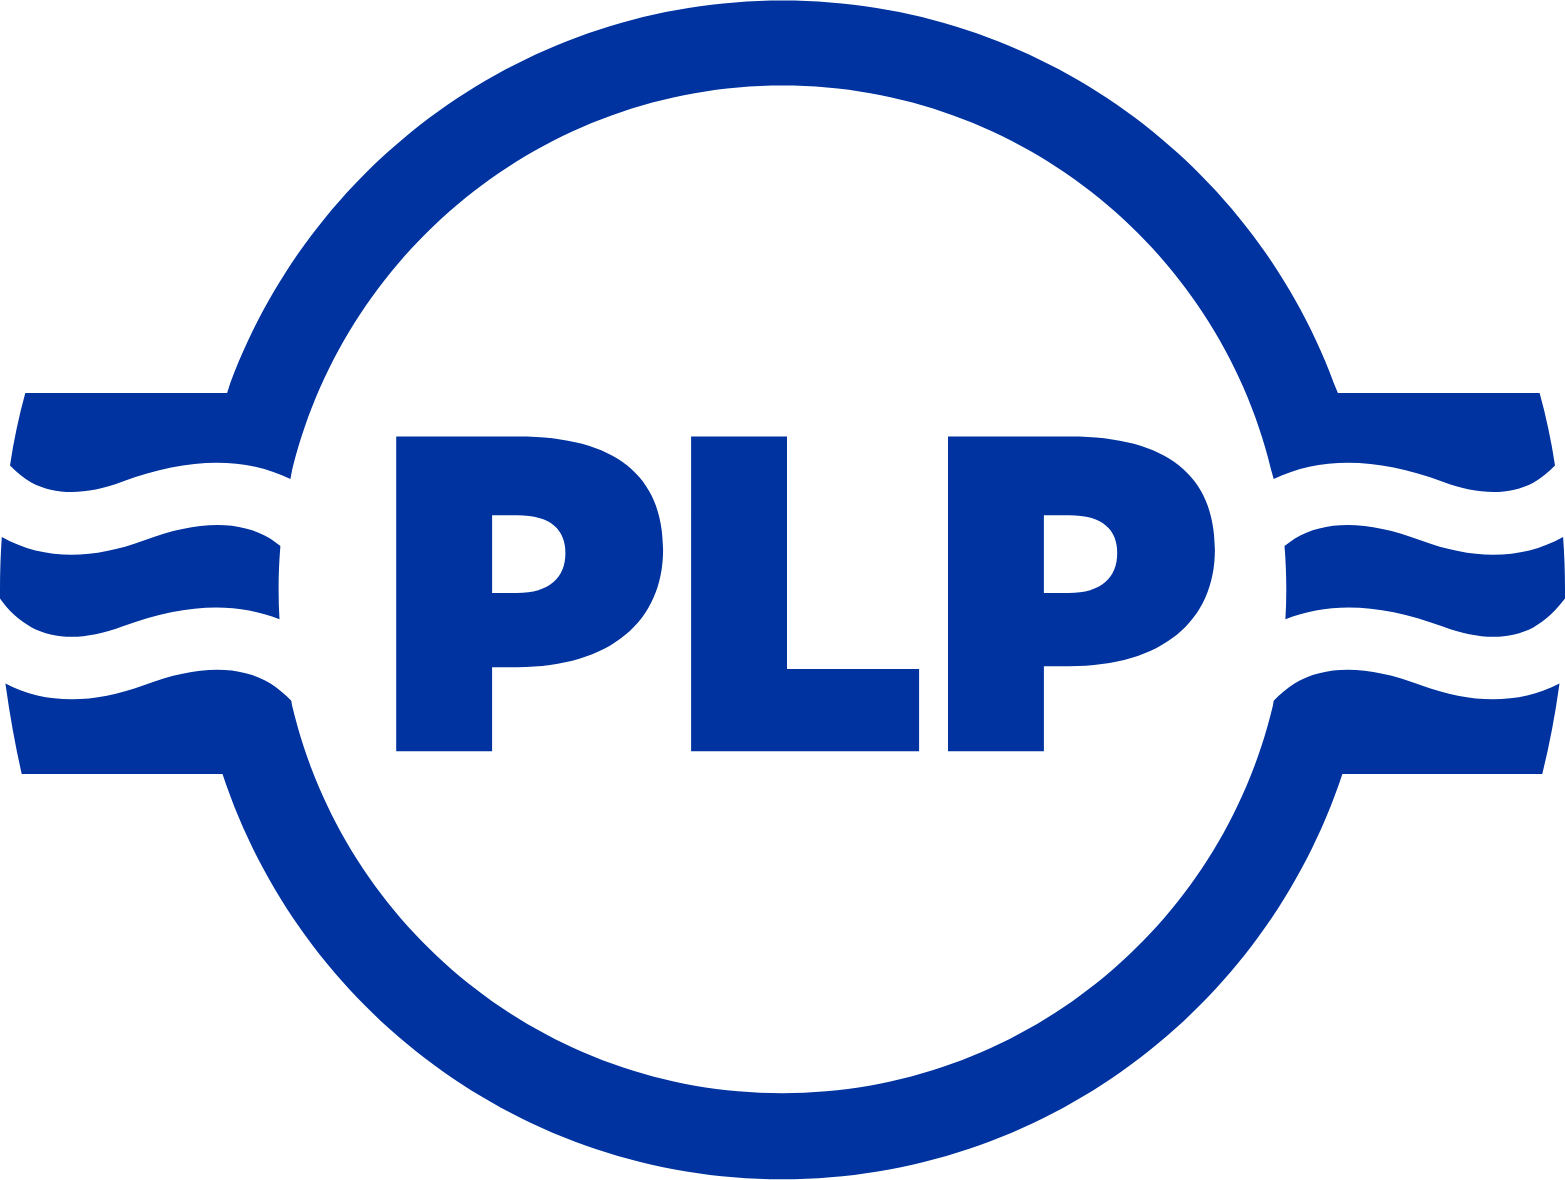 Preformed Line Products logo (PNG transparent)